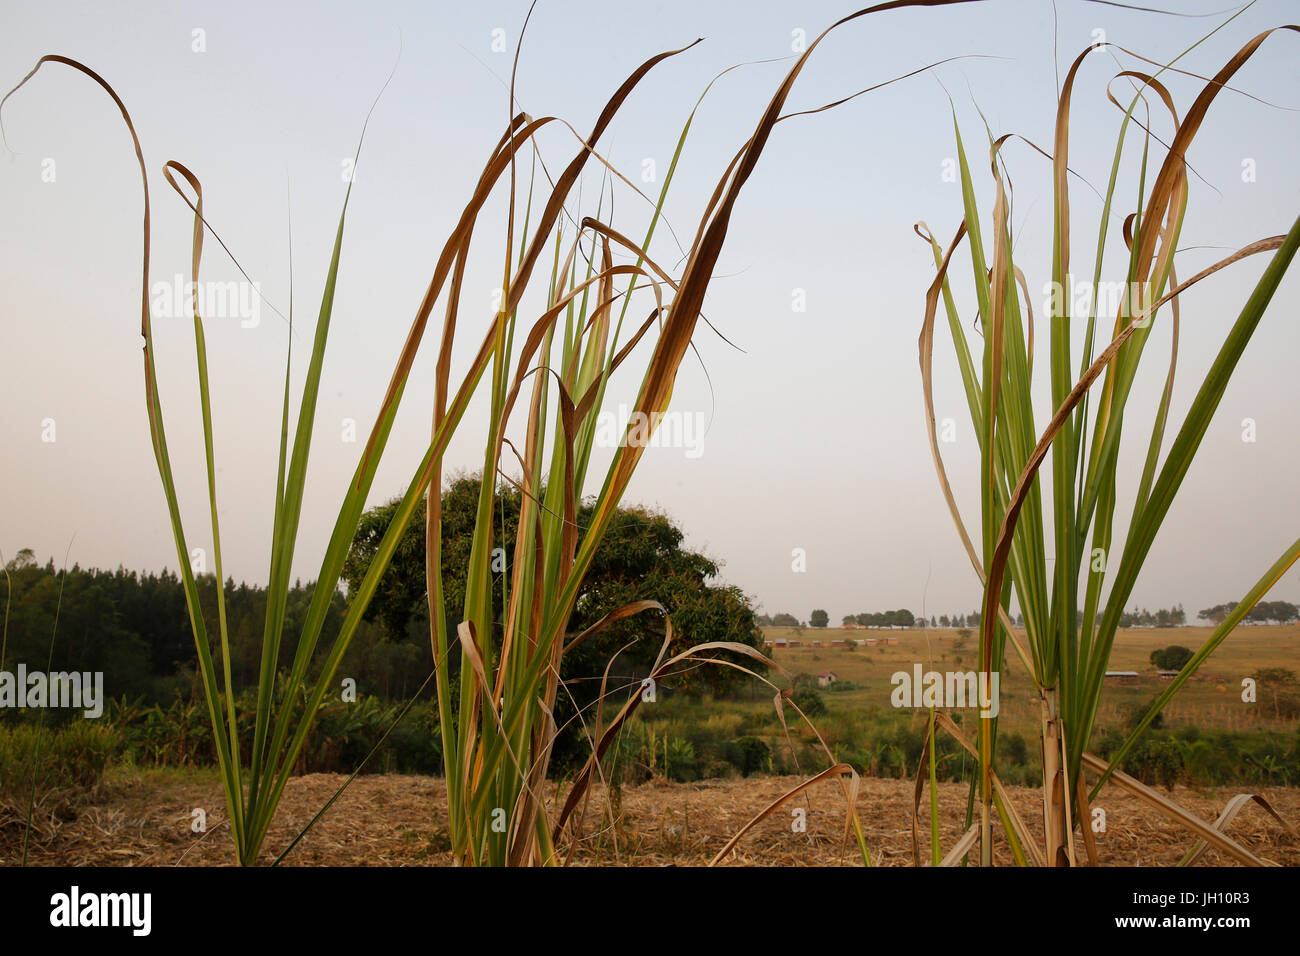 Harvested sugarcane plantation. Uganda. Stock Photo